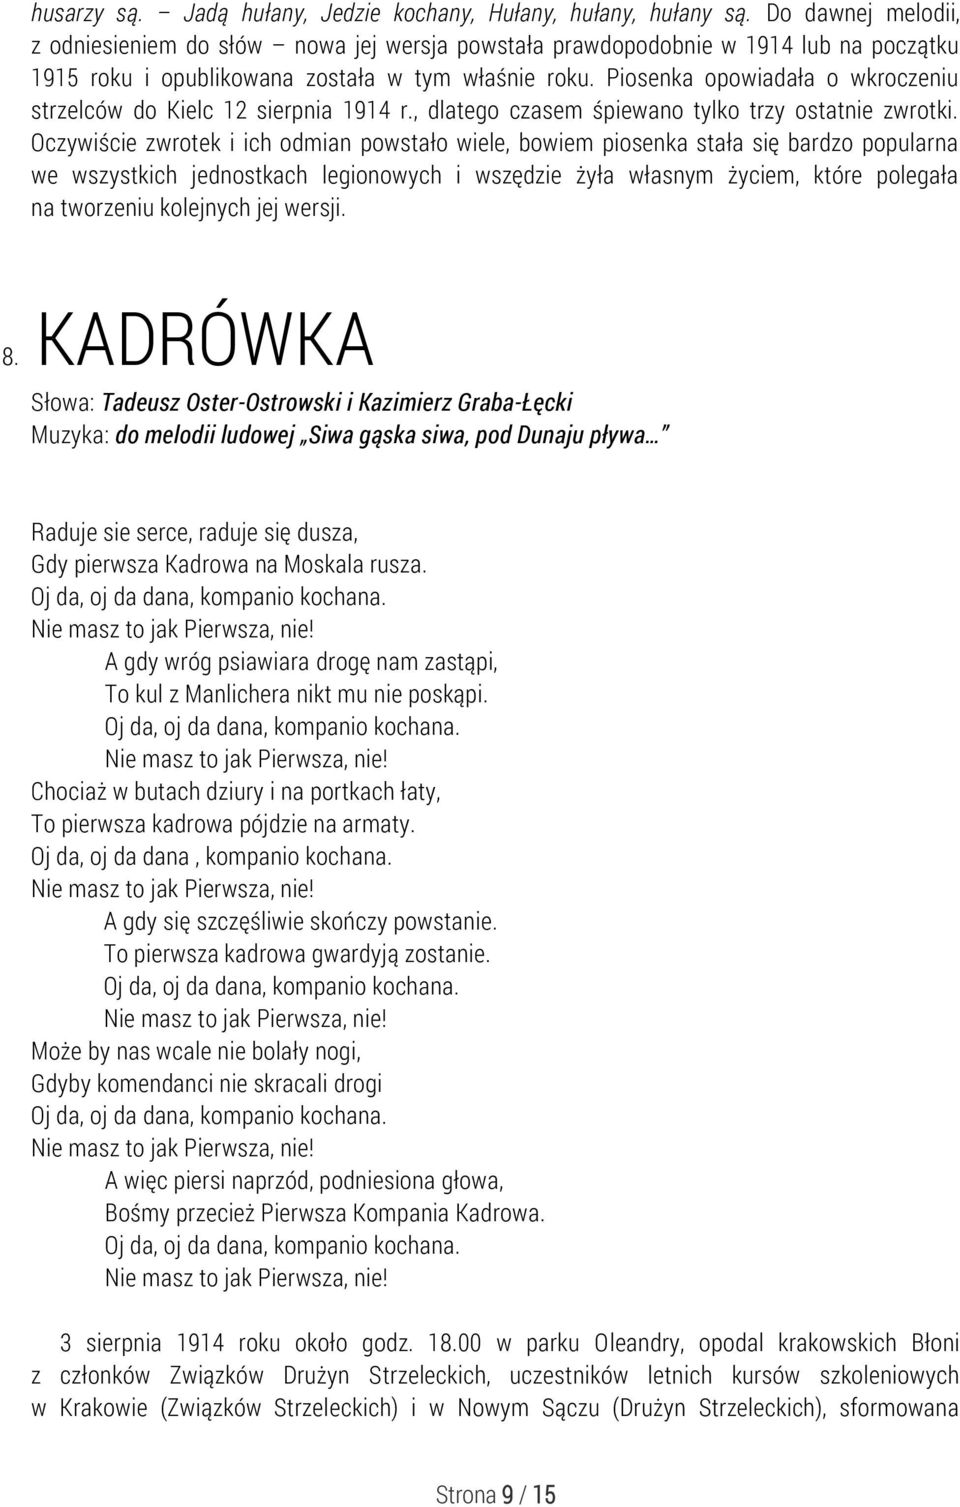 Piosenka opowiadała o wkroczeniu strzelców do Kielc 12 sierpnia 1914 r., dlatego czasem śpiewano tylko trzy ostatnie zwrotki.